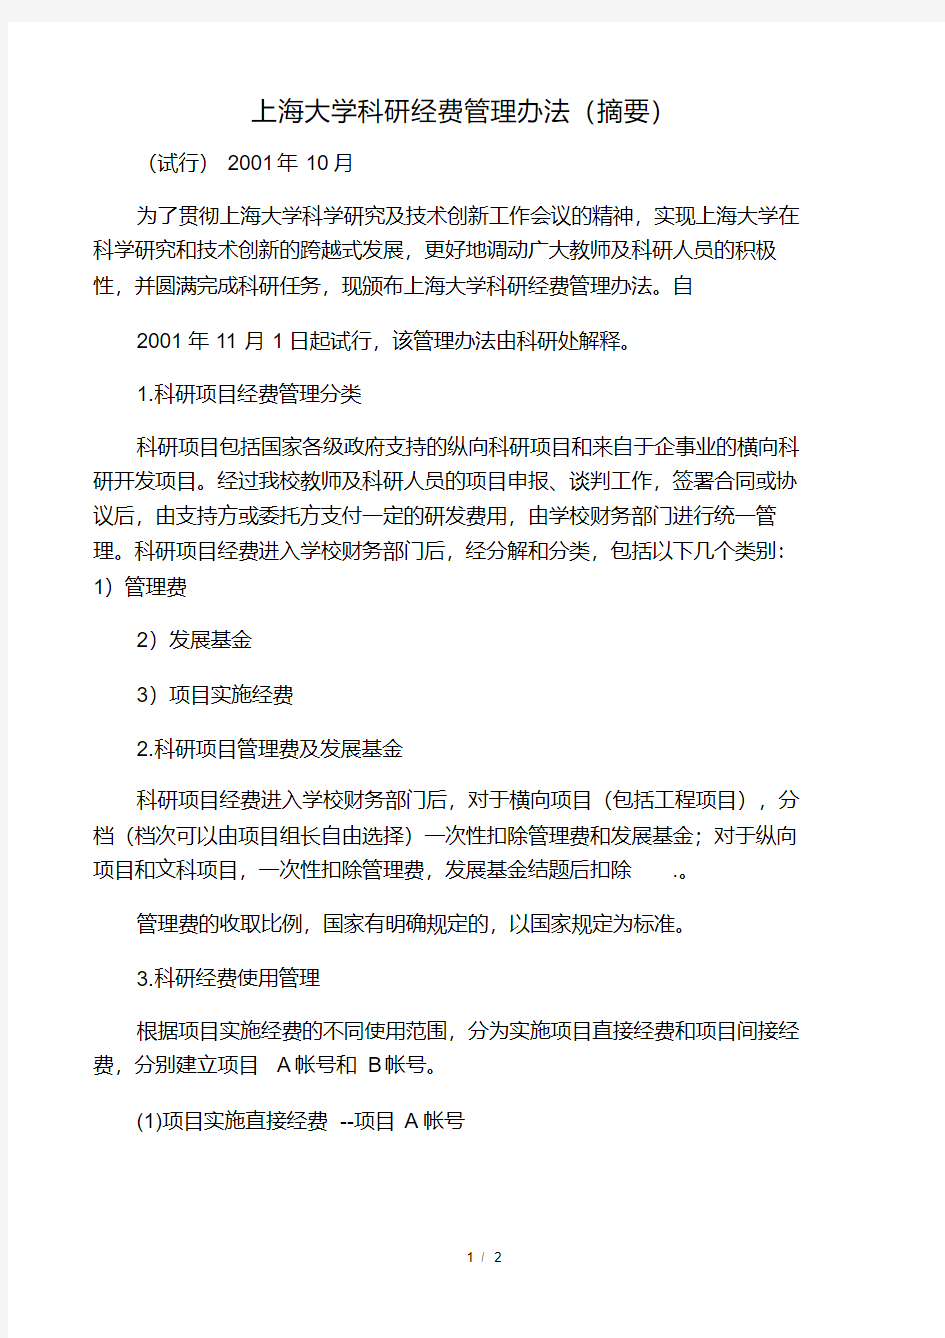 上海大学科研经费管理办法(摘要)